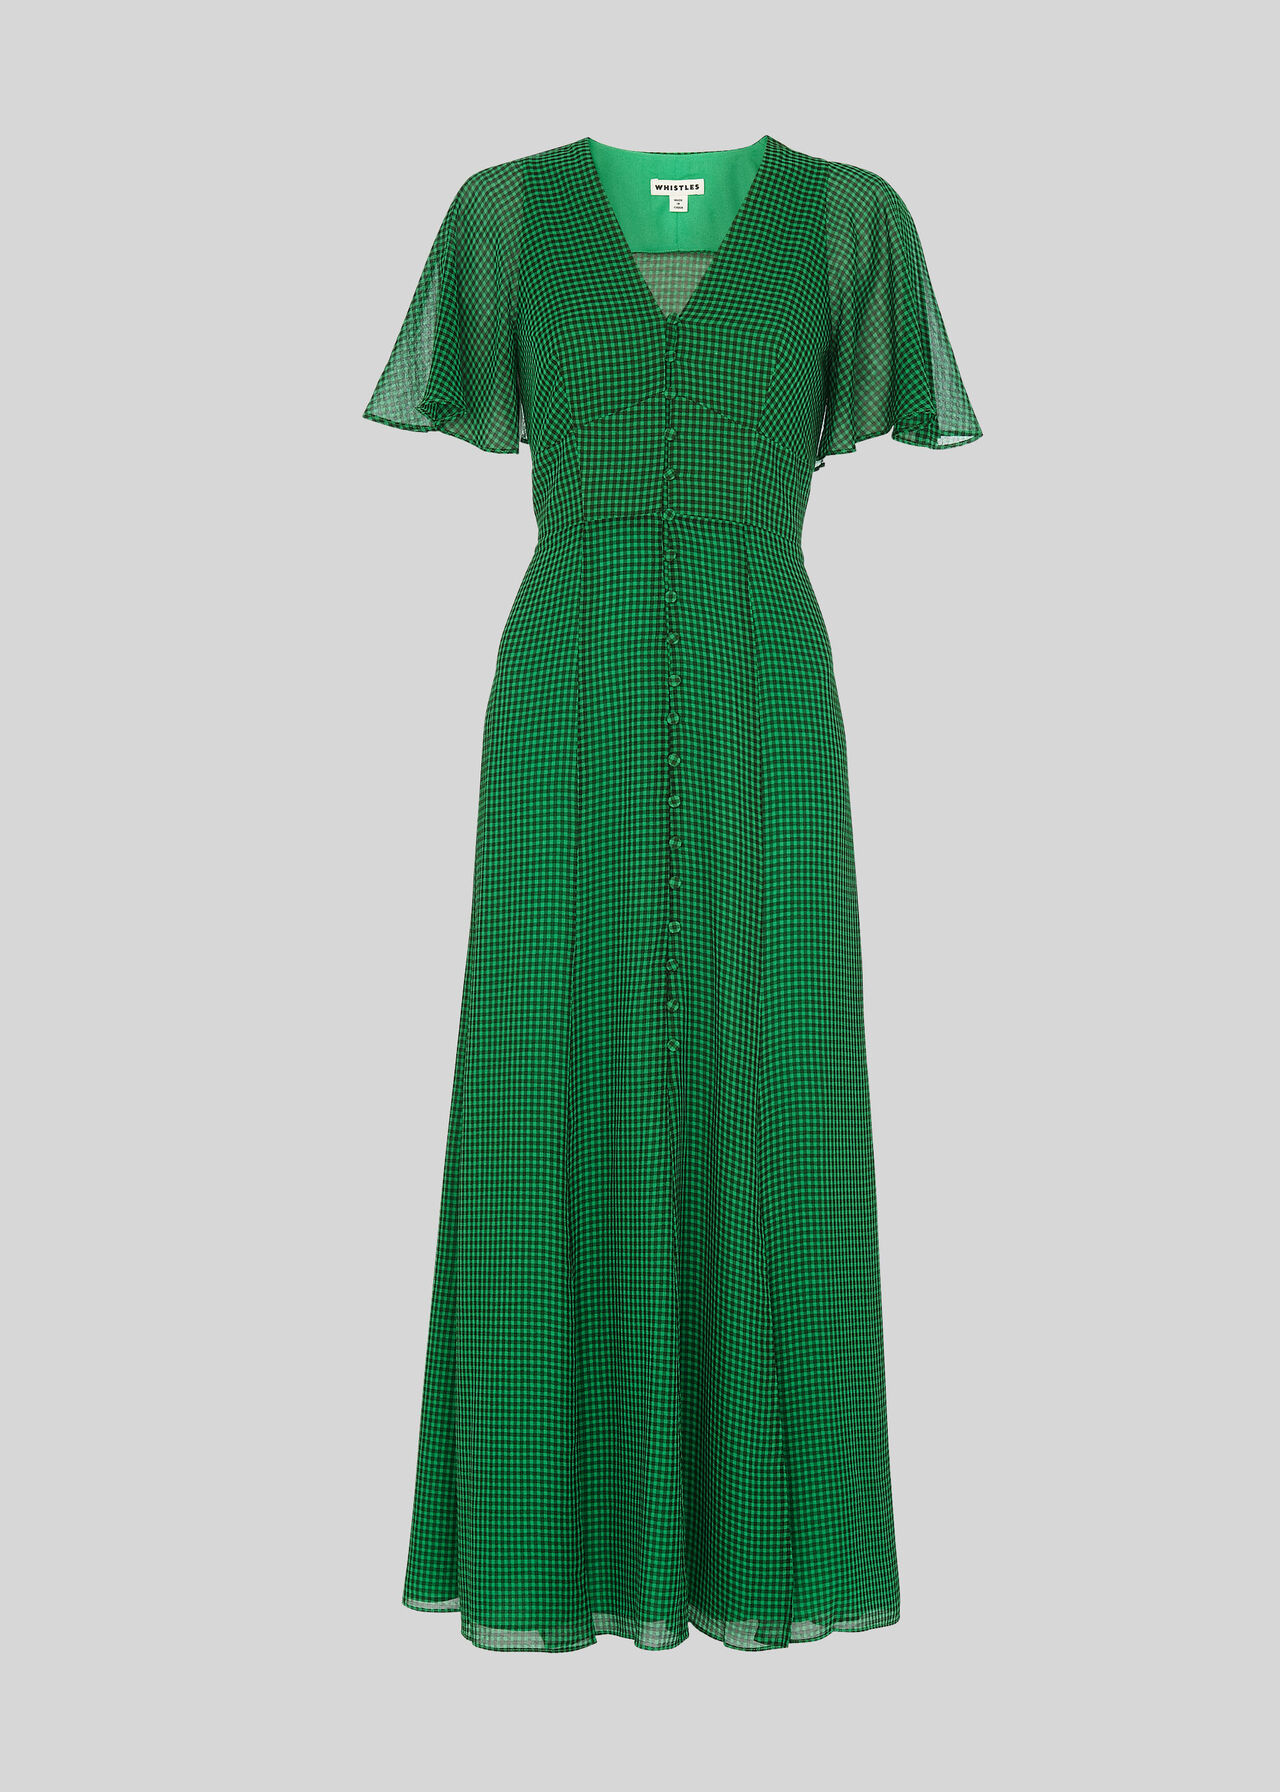 Cecily Check Dress Green/Multi